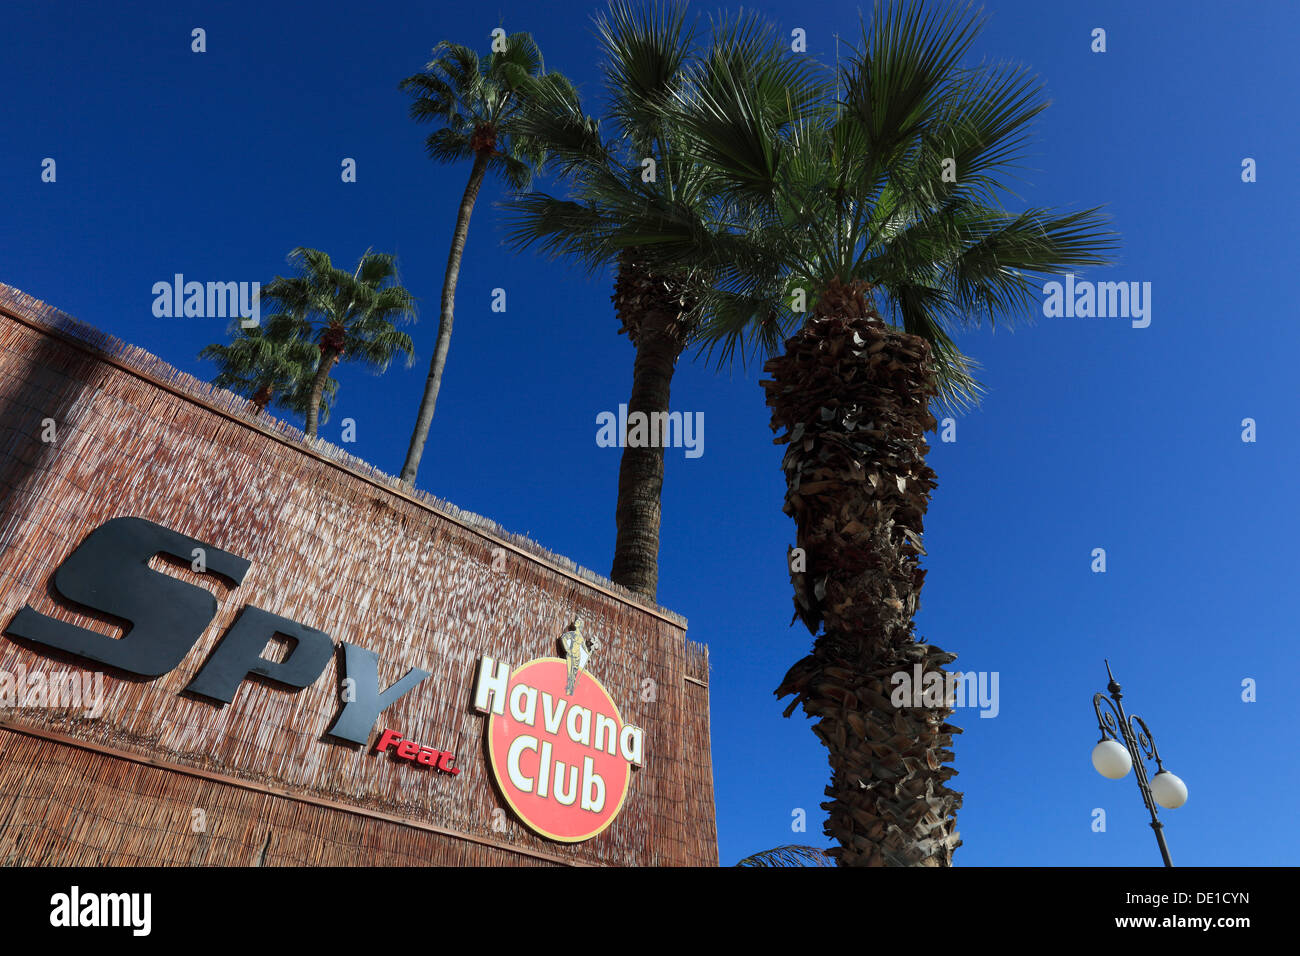 Chipre, Larnaca, Havana Club, la publicidad, las palmas Foto de stock